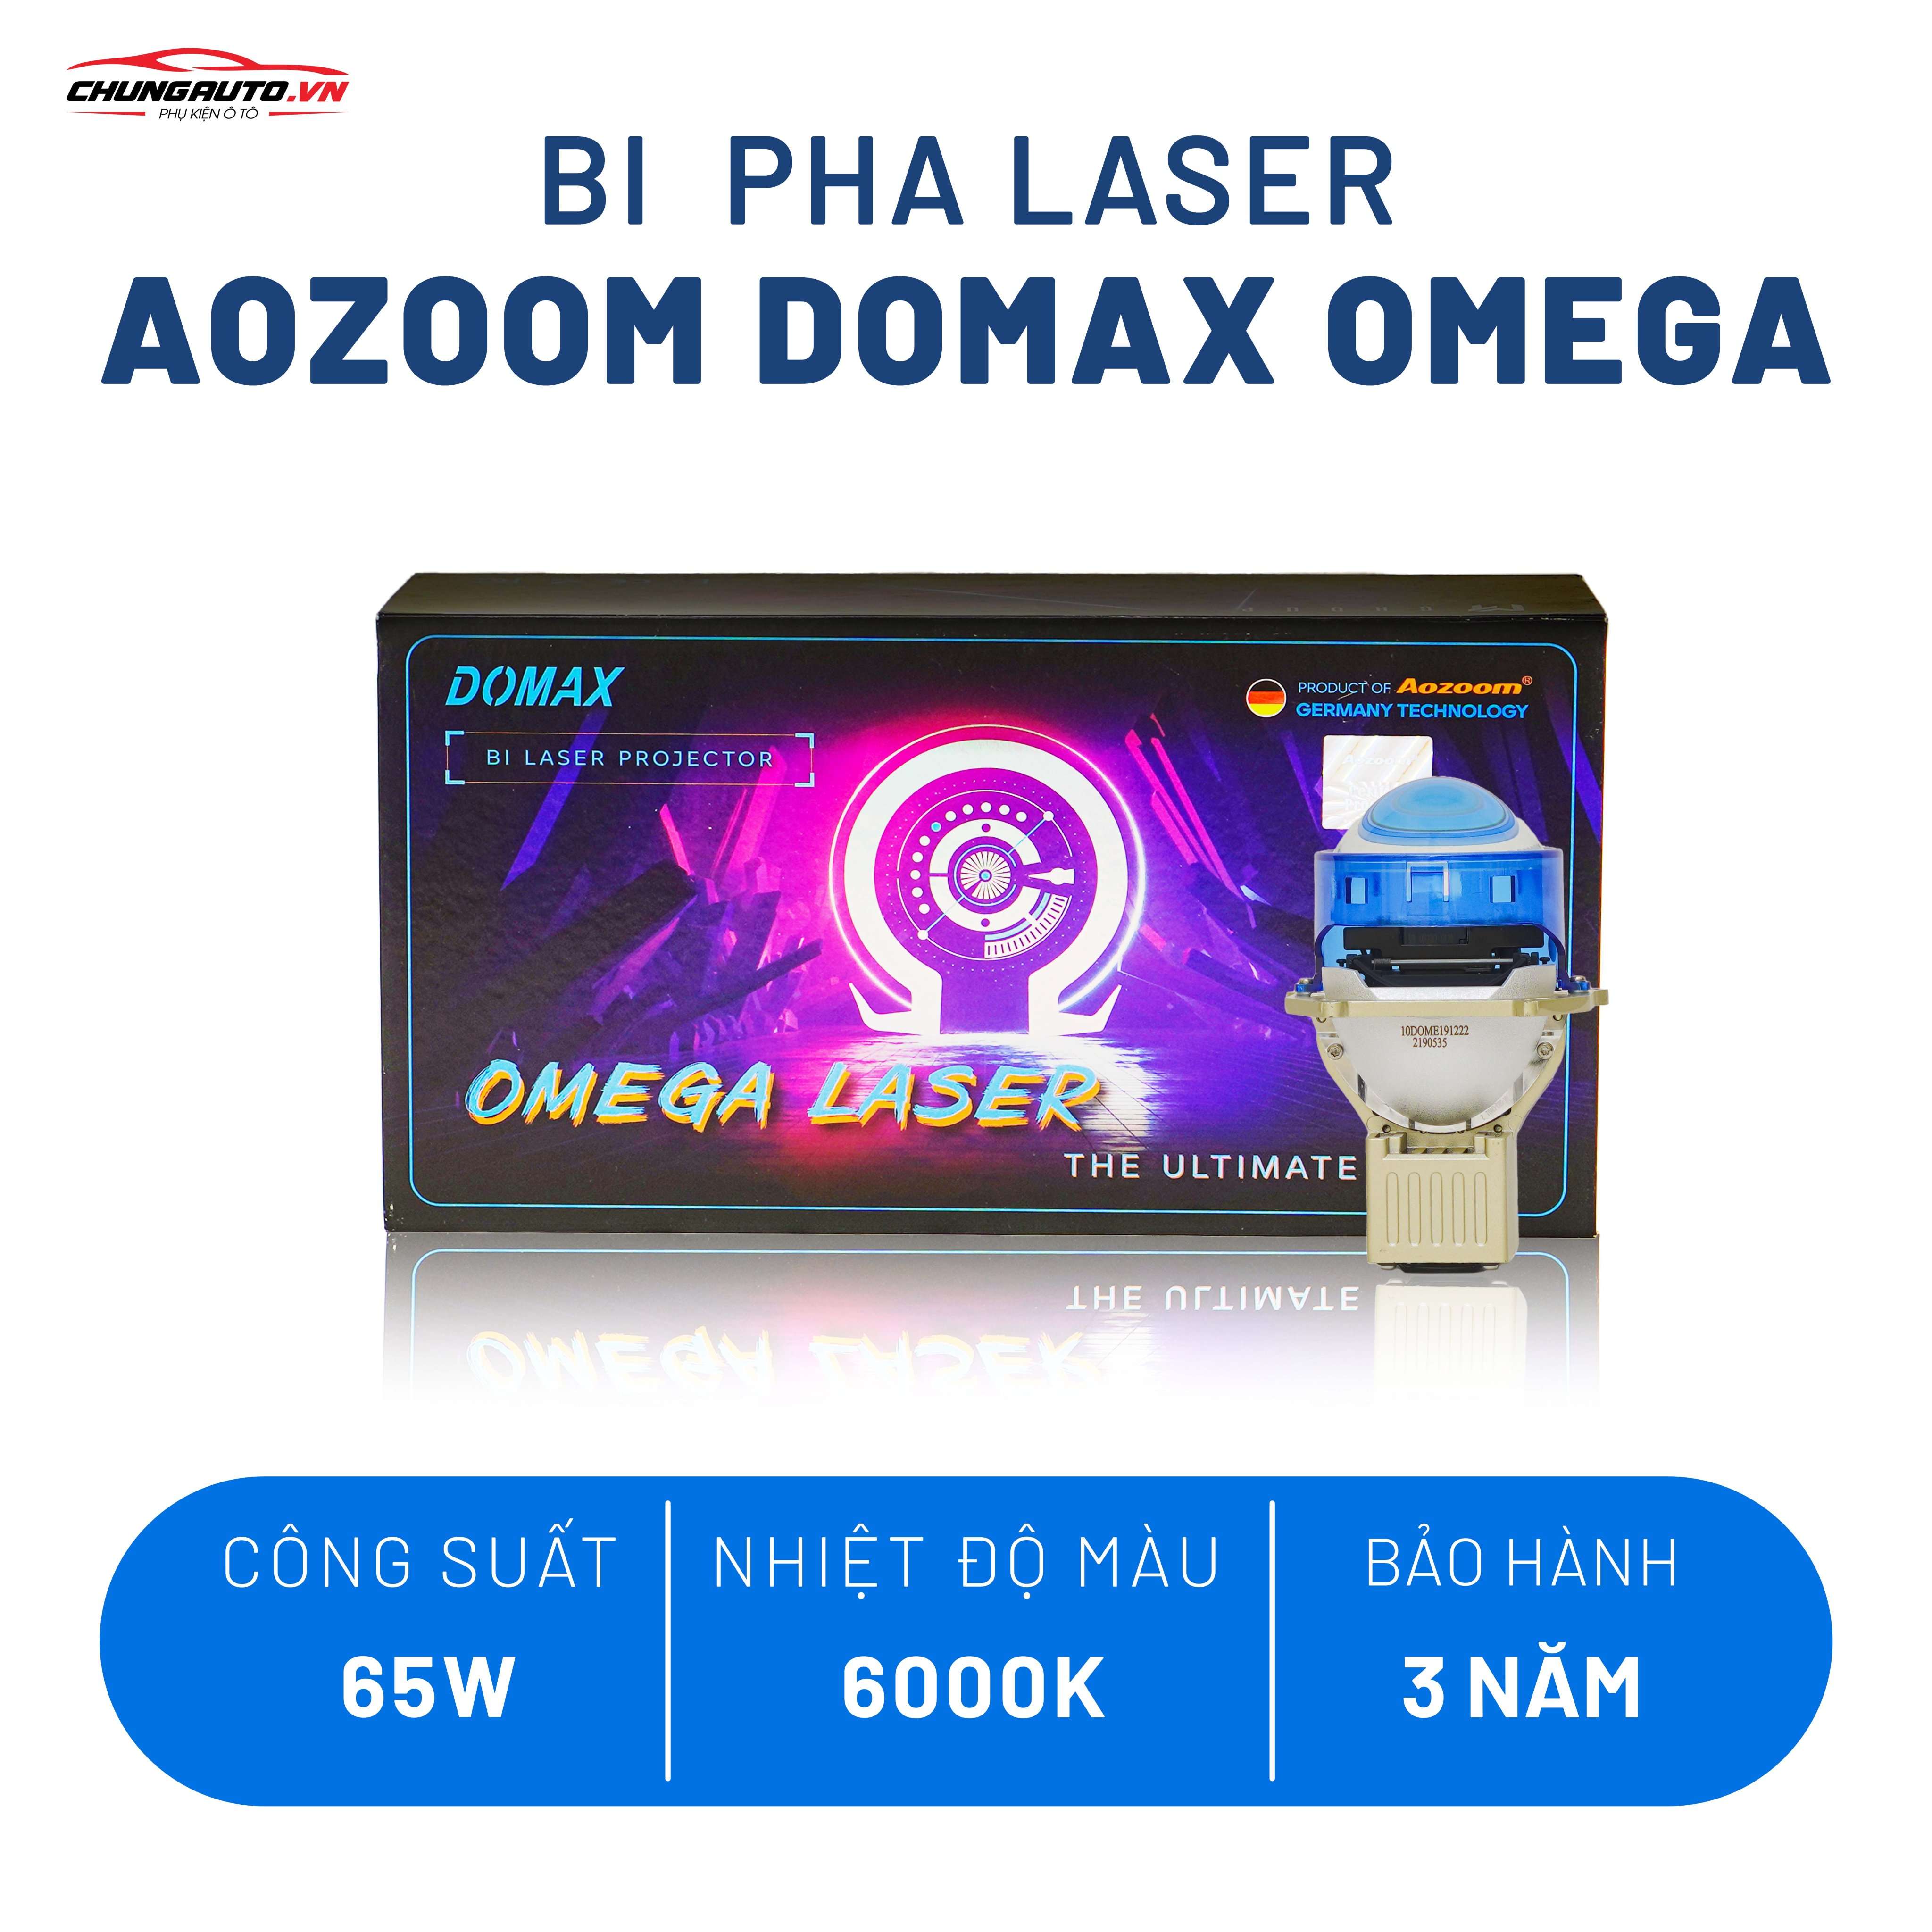 Bi Laser AoZoom Domax Omega - Tăng sáng vượt trội cho xế cưng